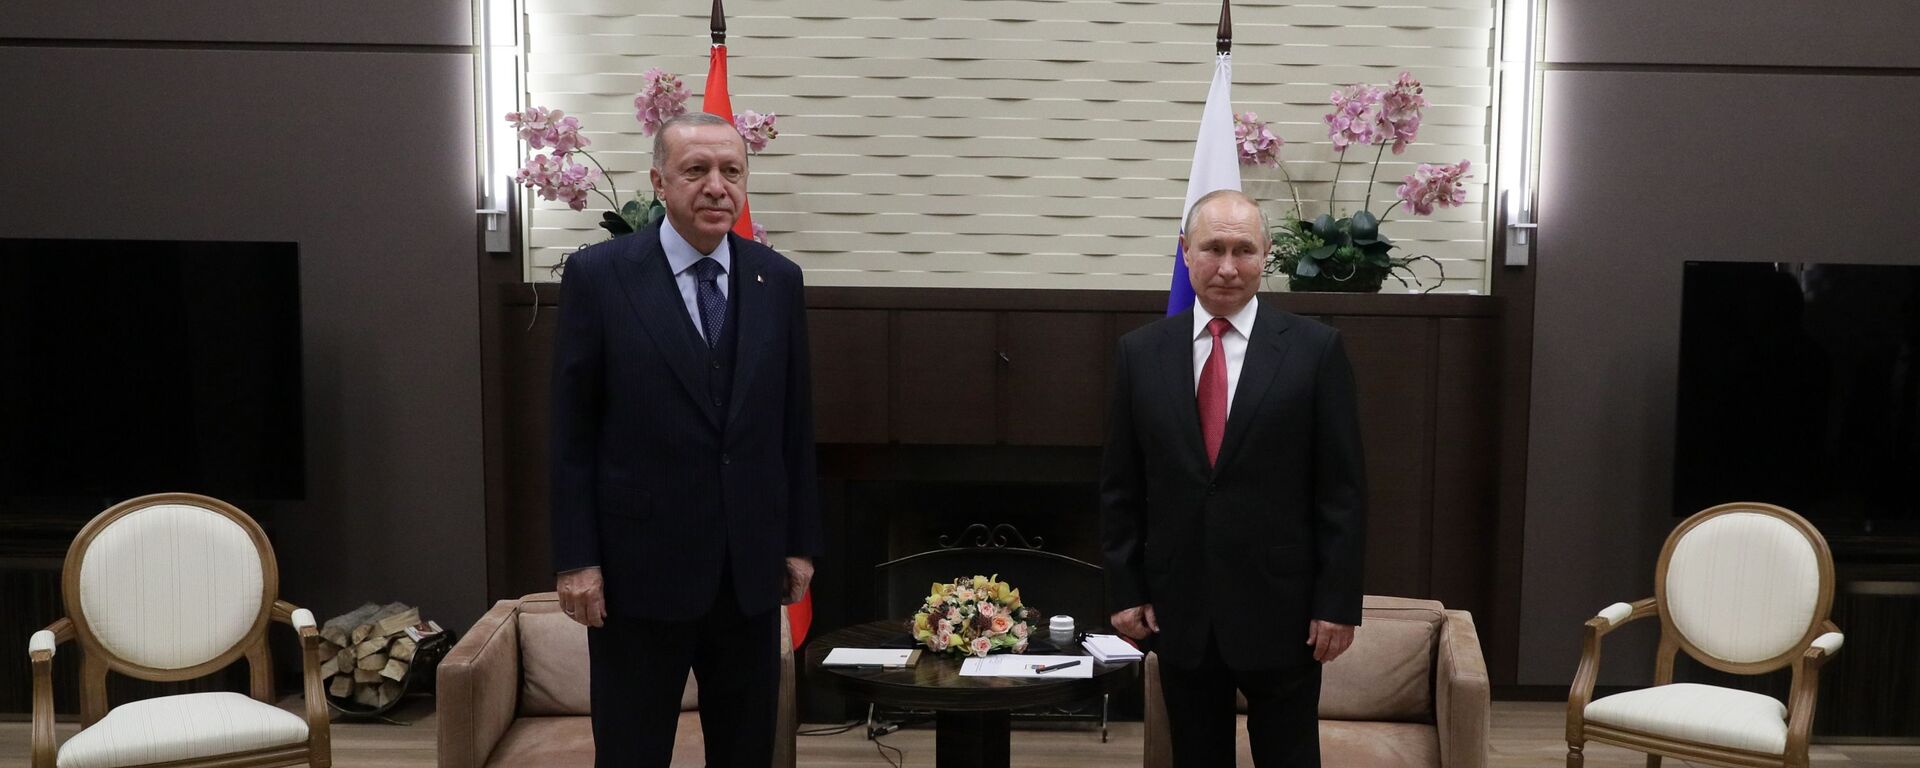 Президент РФ В. Путин провел переговоры с президентом Турции Р. Эрдоганом - Sputnik Абхазия, 1920, 29.09.2021